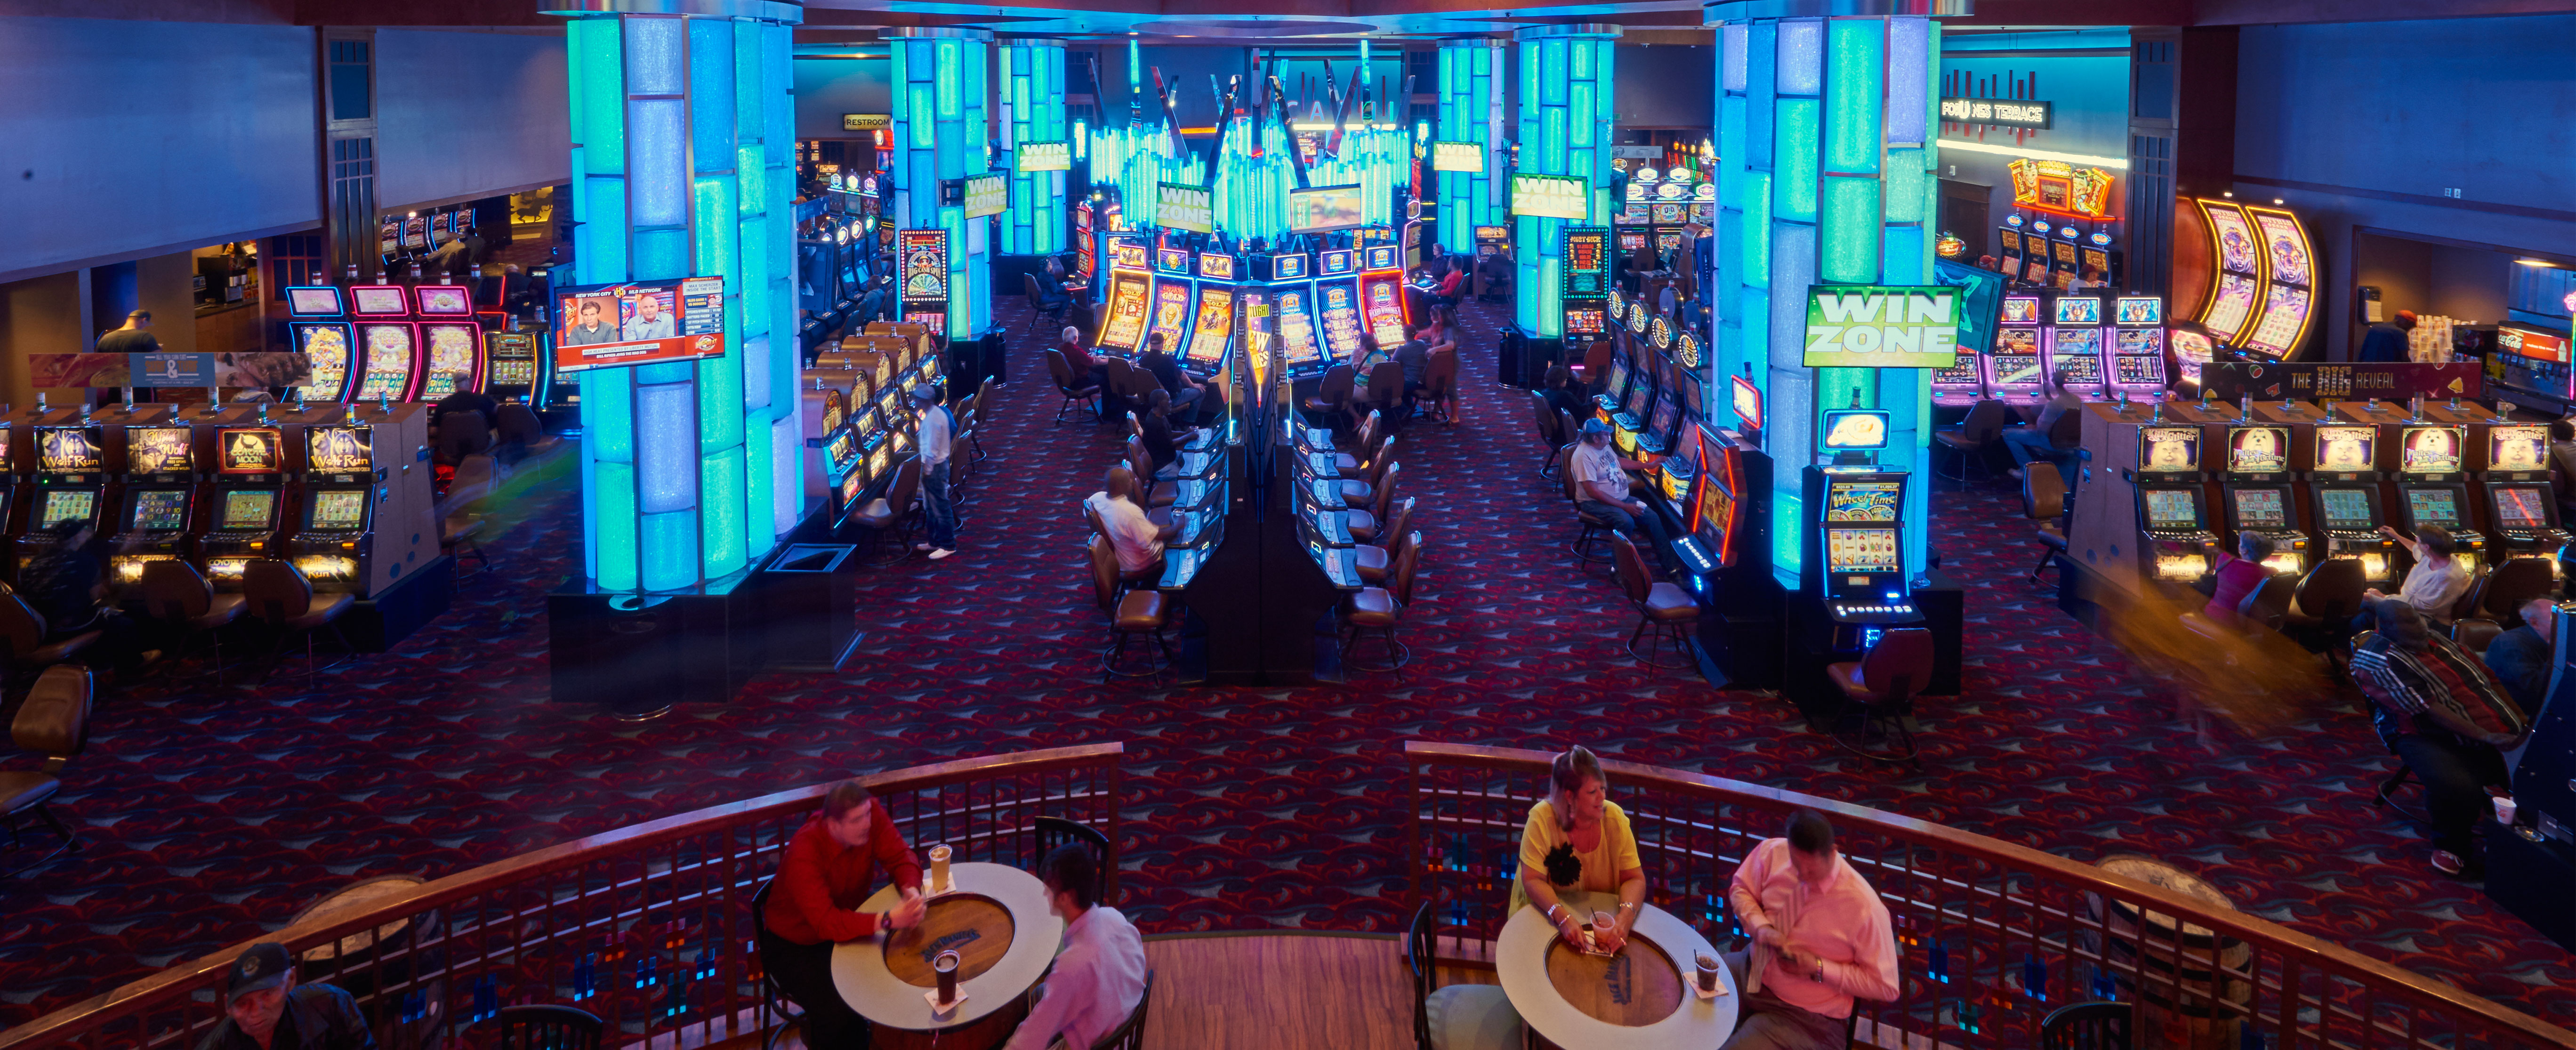 Kasino 3000 Spielautomaten Gmbh casino spiele mit handyrechnung bezahlen Regensburg, Verbunden Spielsaal Beste Gewinnchancen